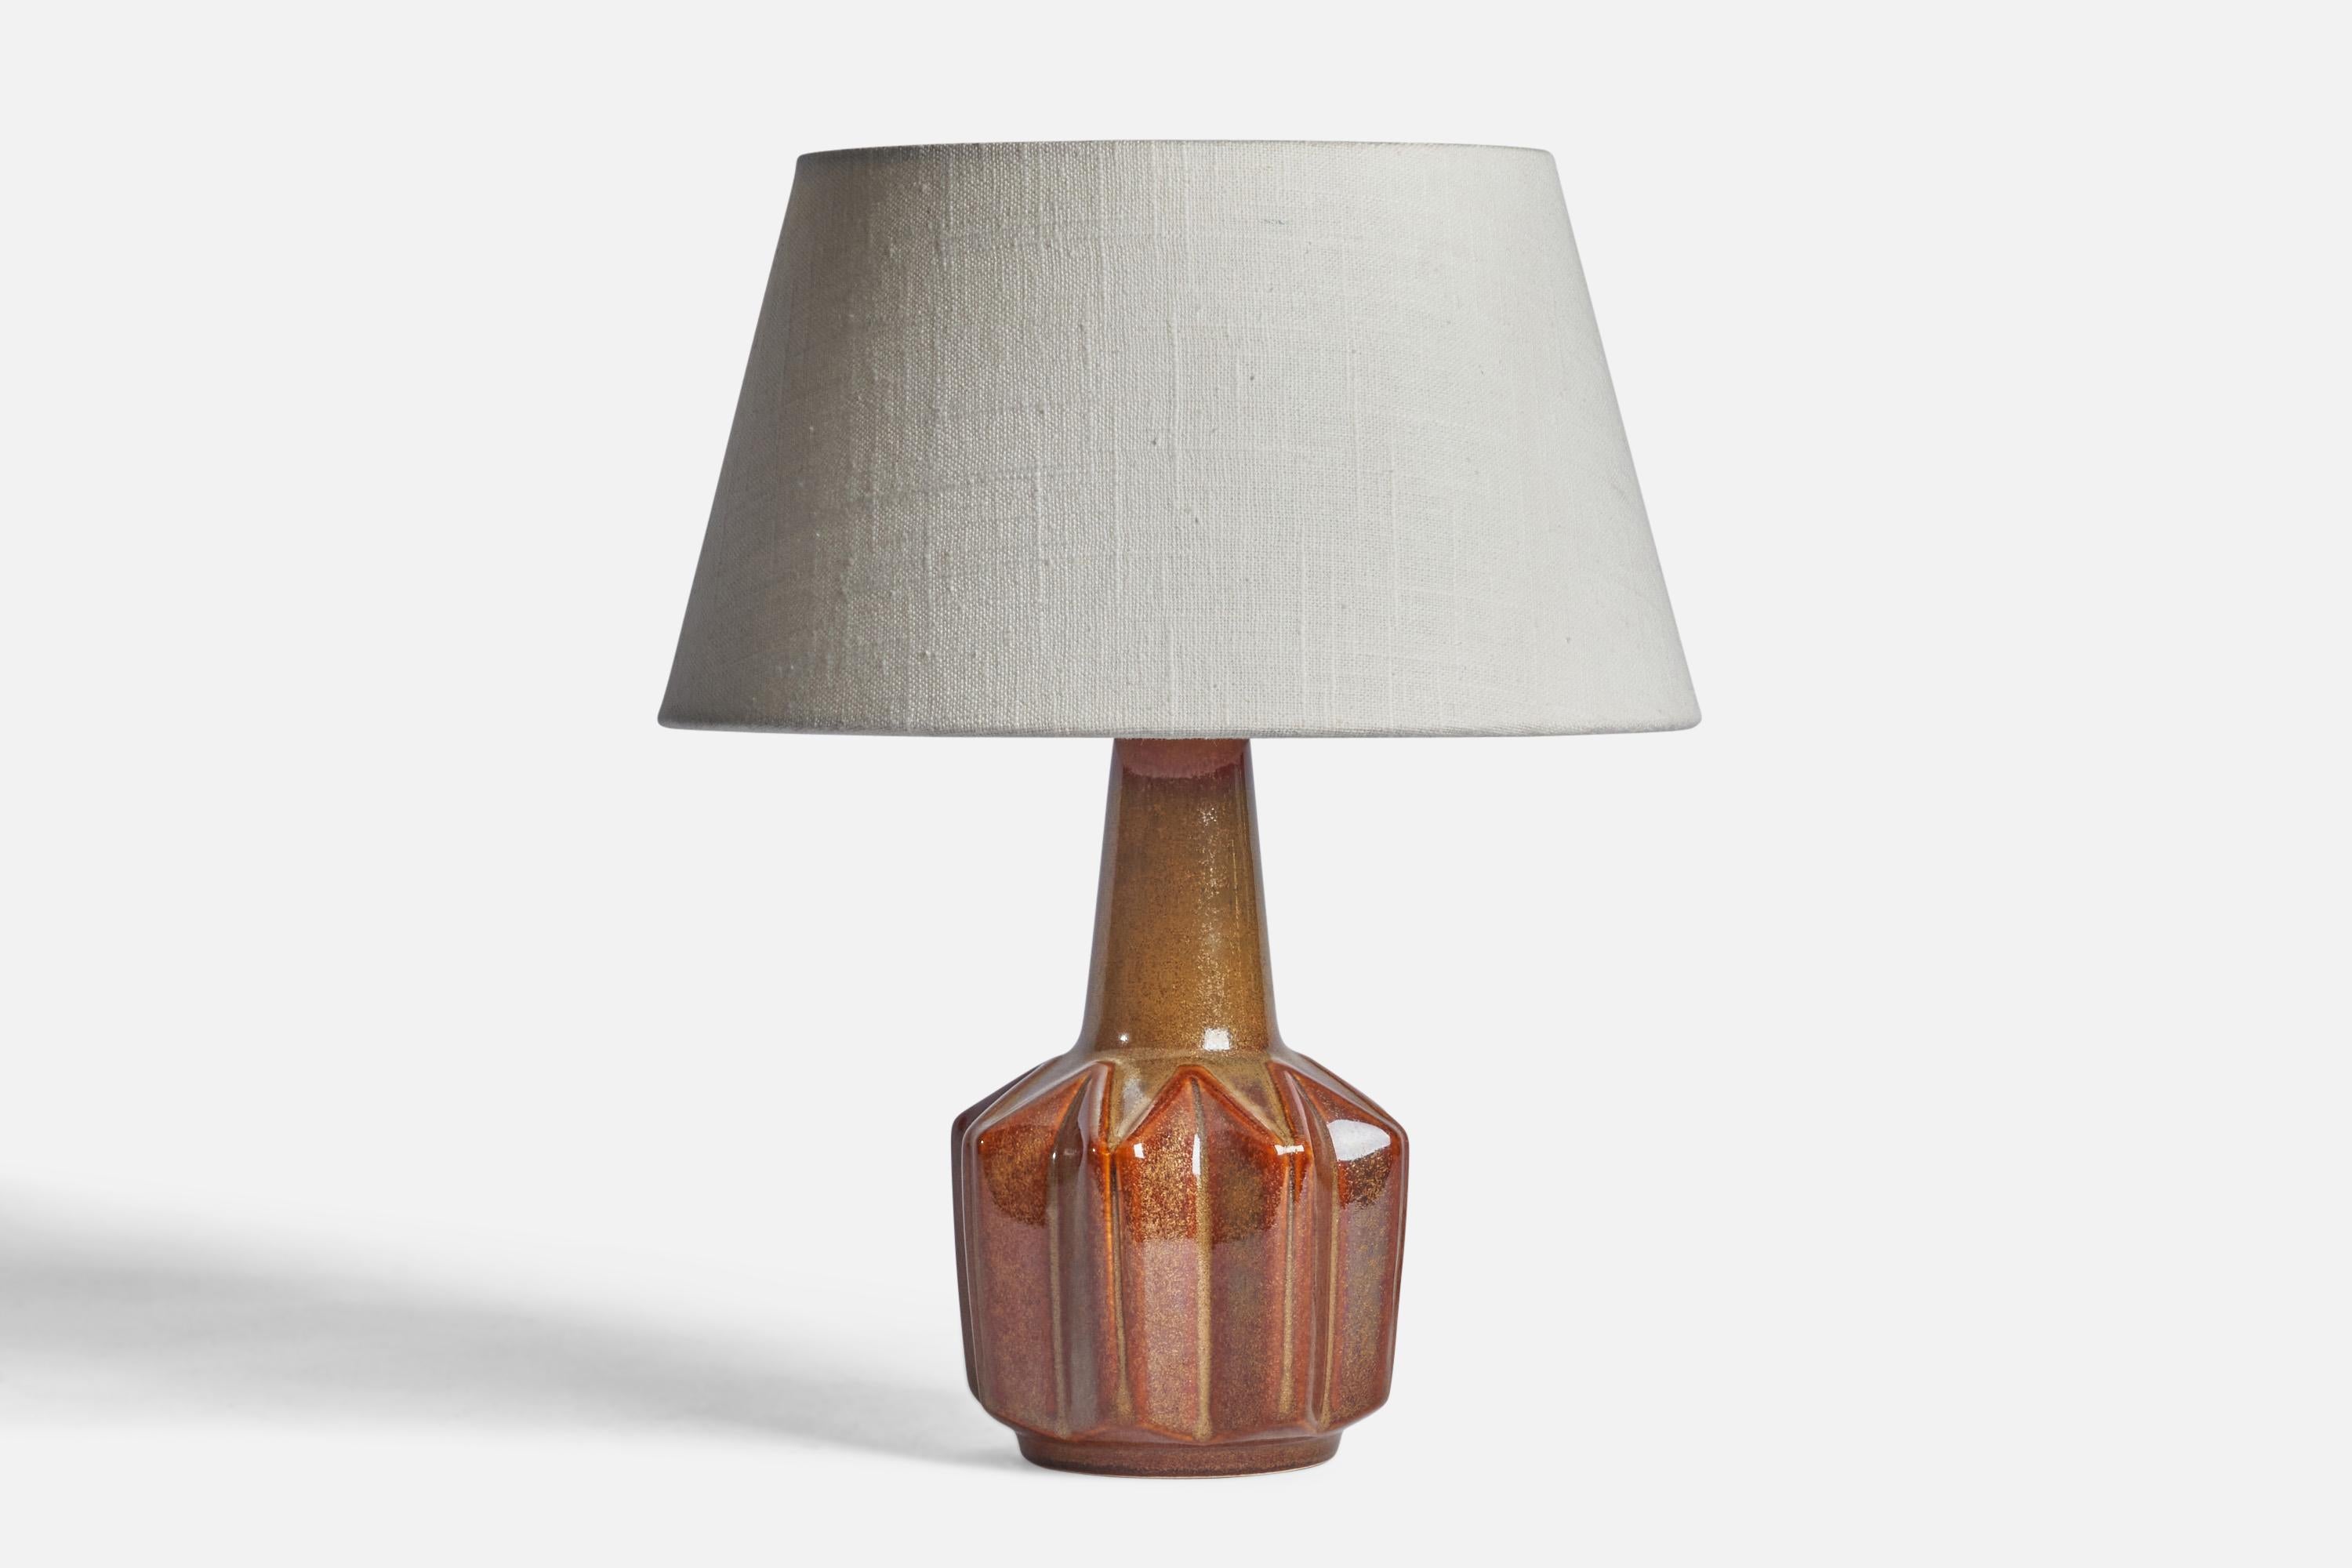 Lampe de table en grès émaillé brun, conçue et produite par Søholm, Bornholm, Danemark, années 1960.

Dimensions de la lampe (pouces) : 9.5